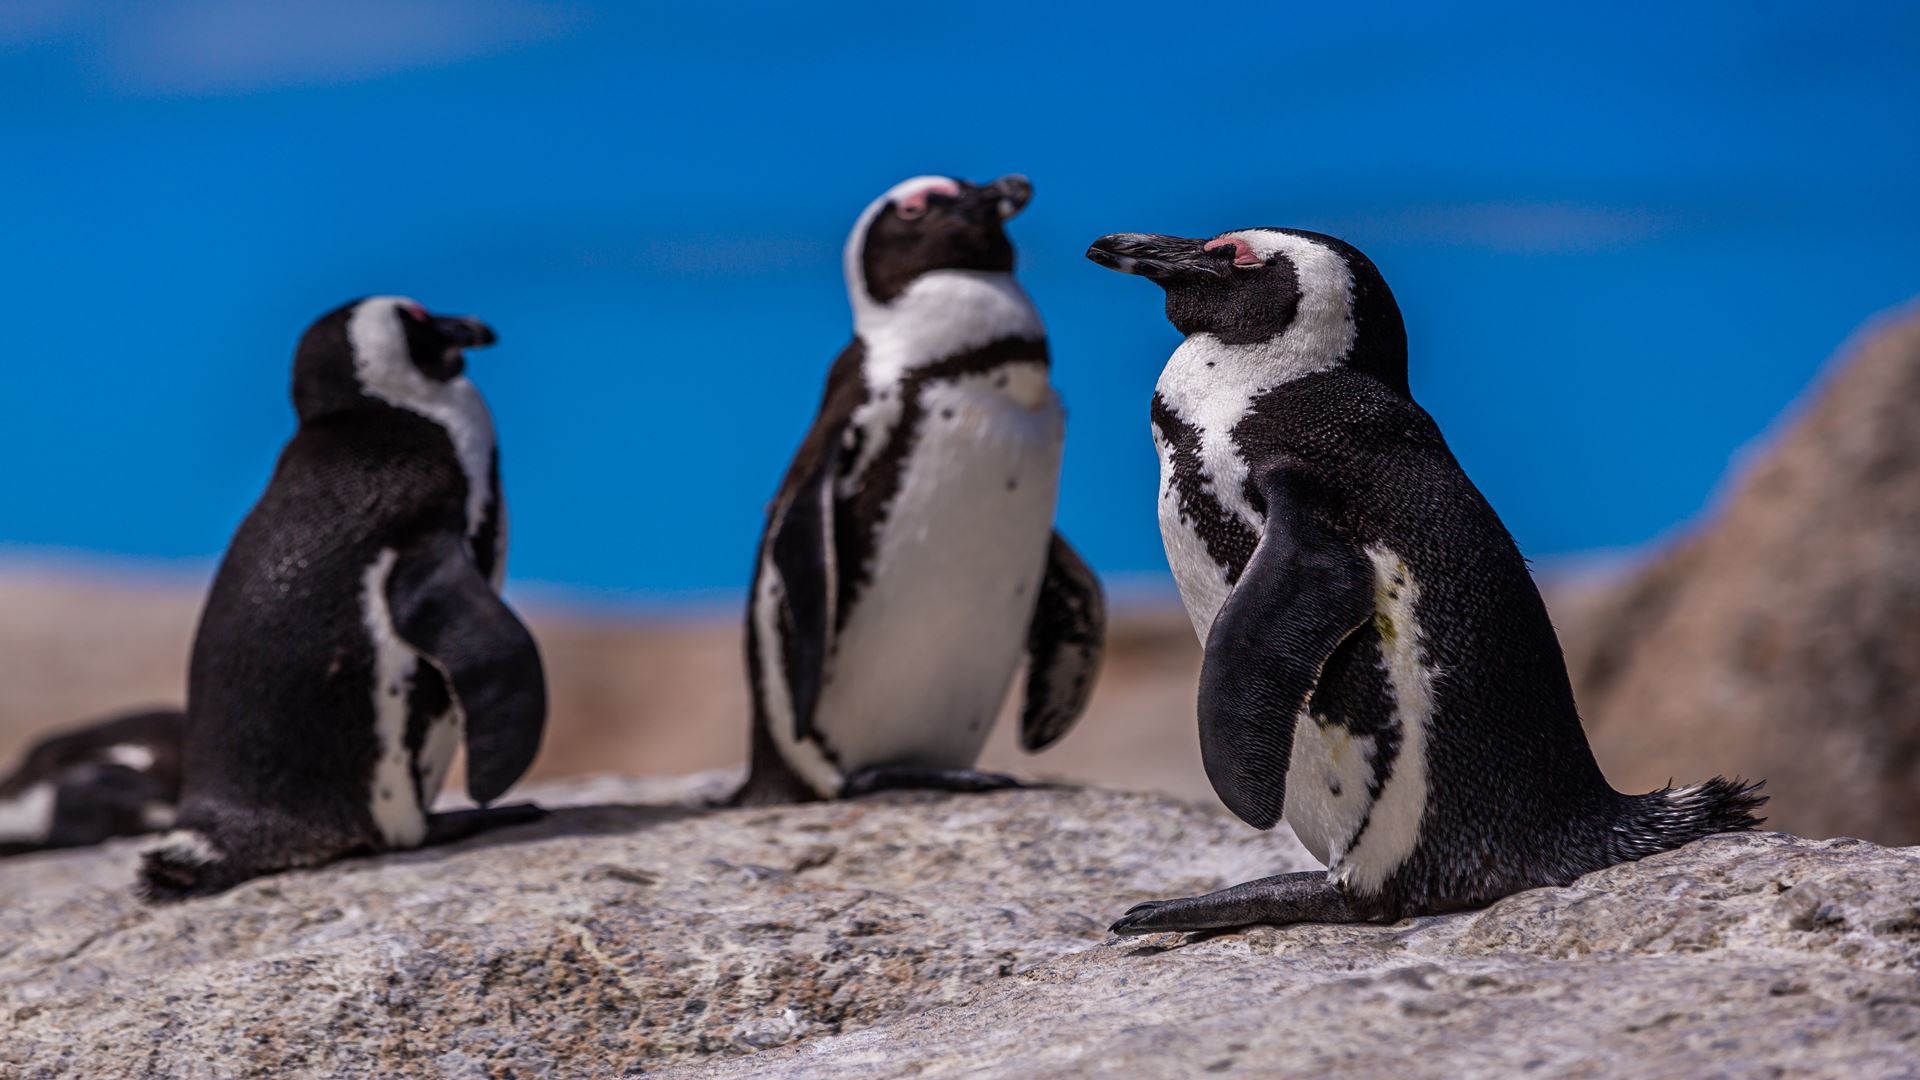 Comment voir des pingouins à Ushuaia